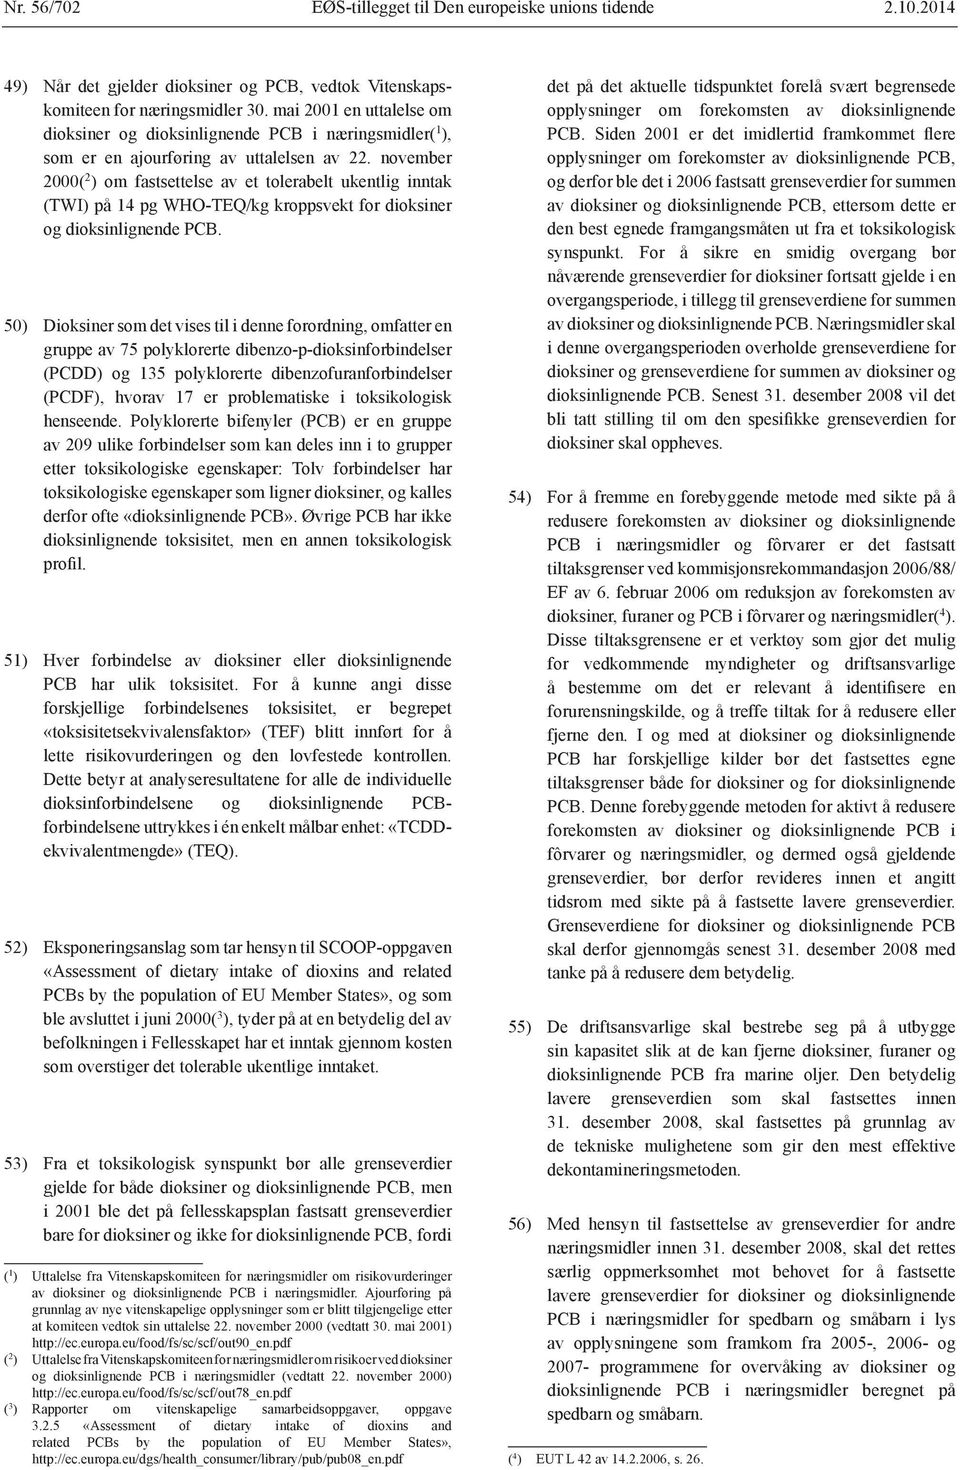 november 2000( 2 ) om fastsettelse av et tolerabelt ukentlig inntak og dioksinlignende PCB.